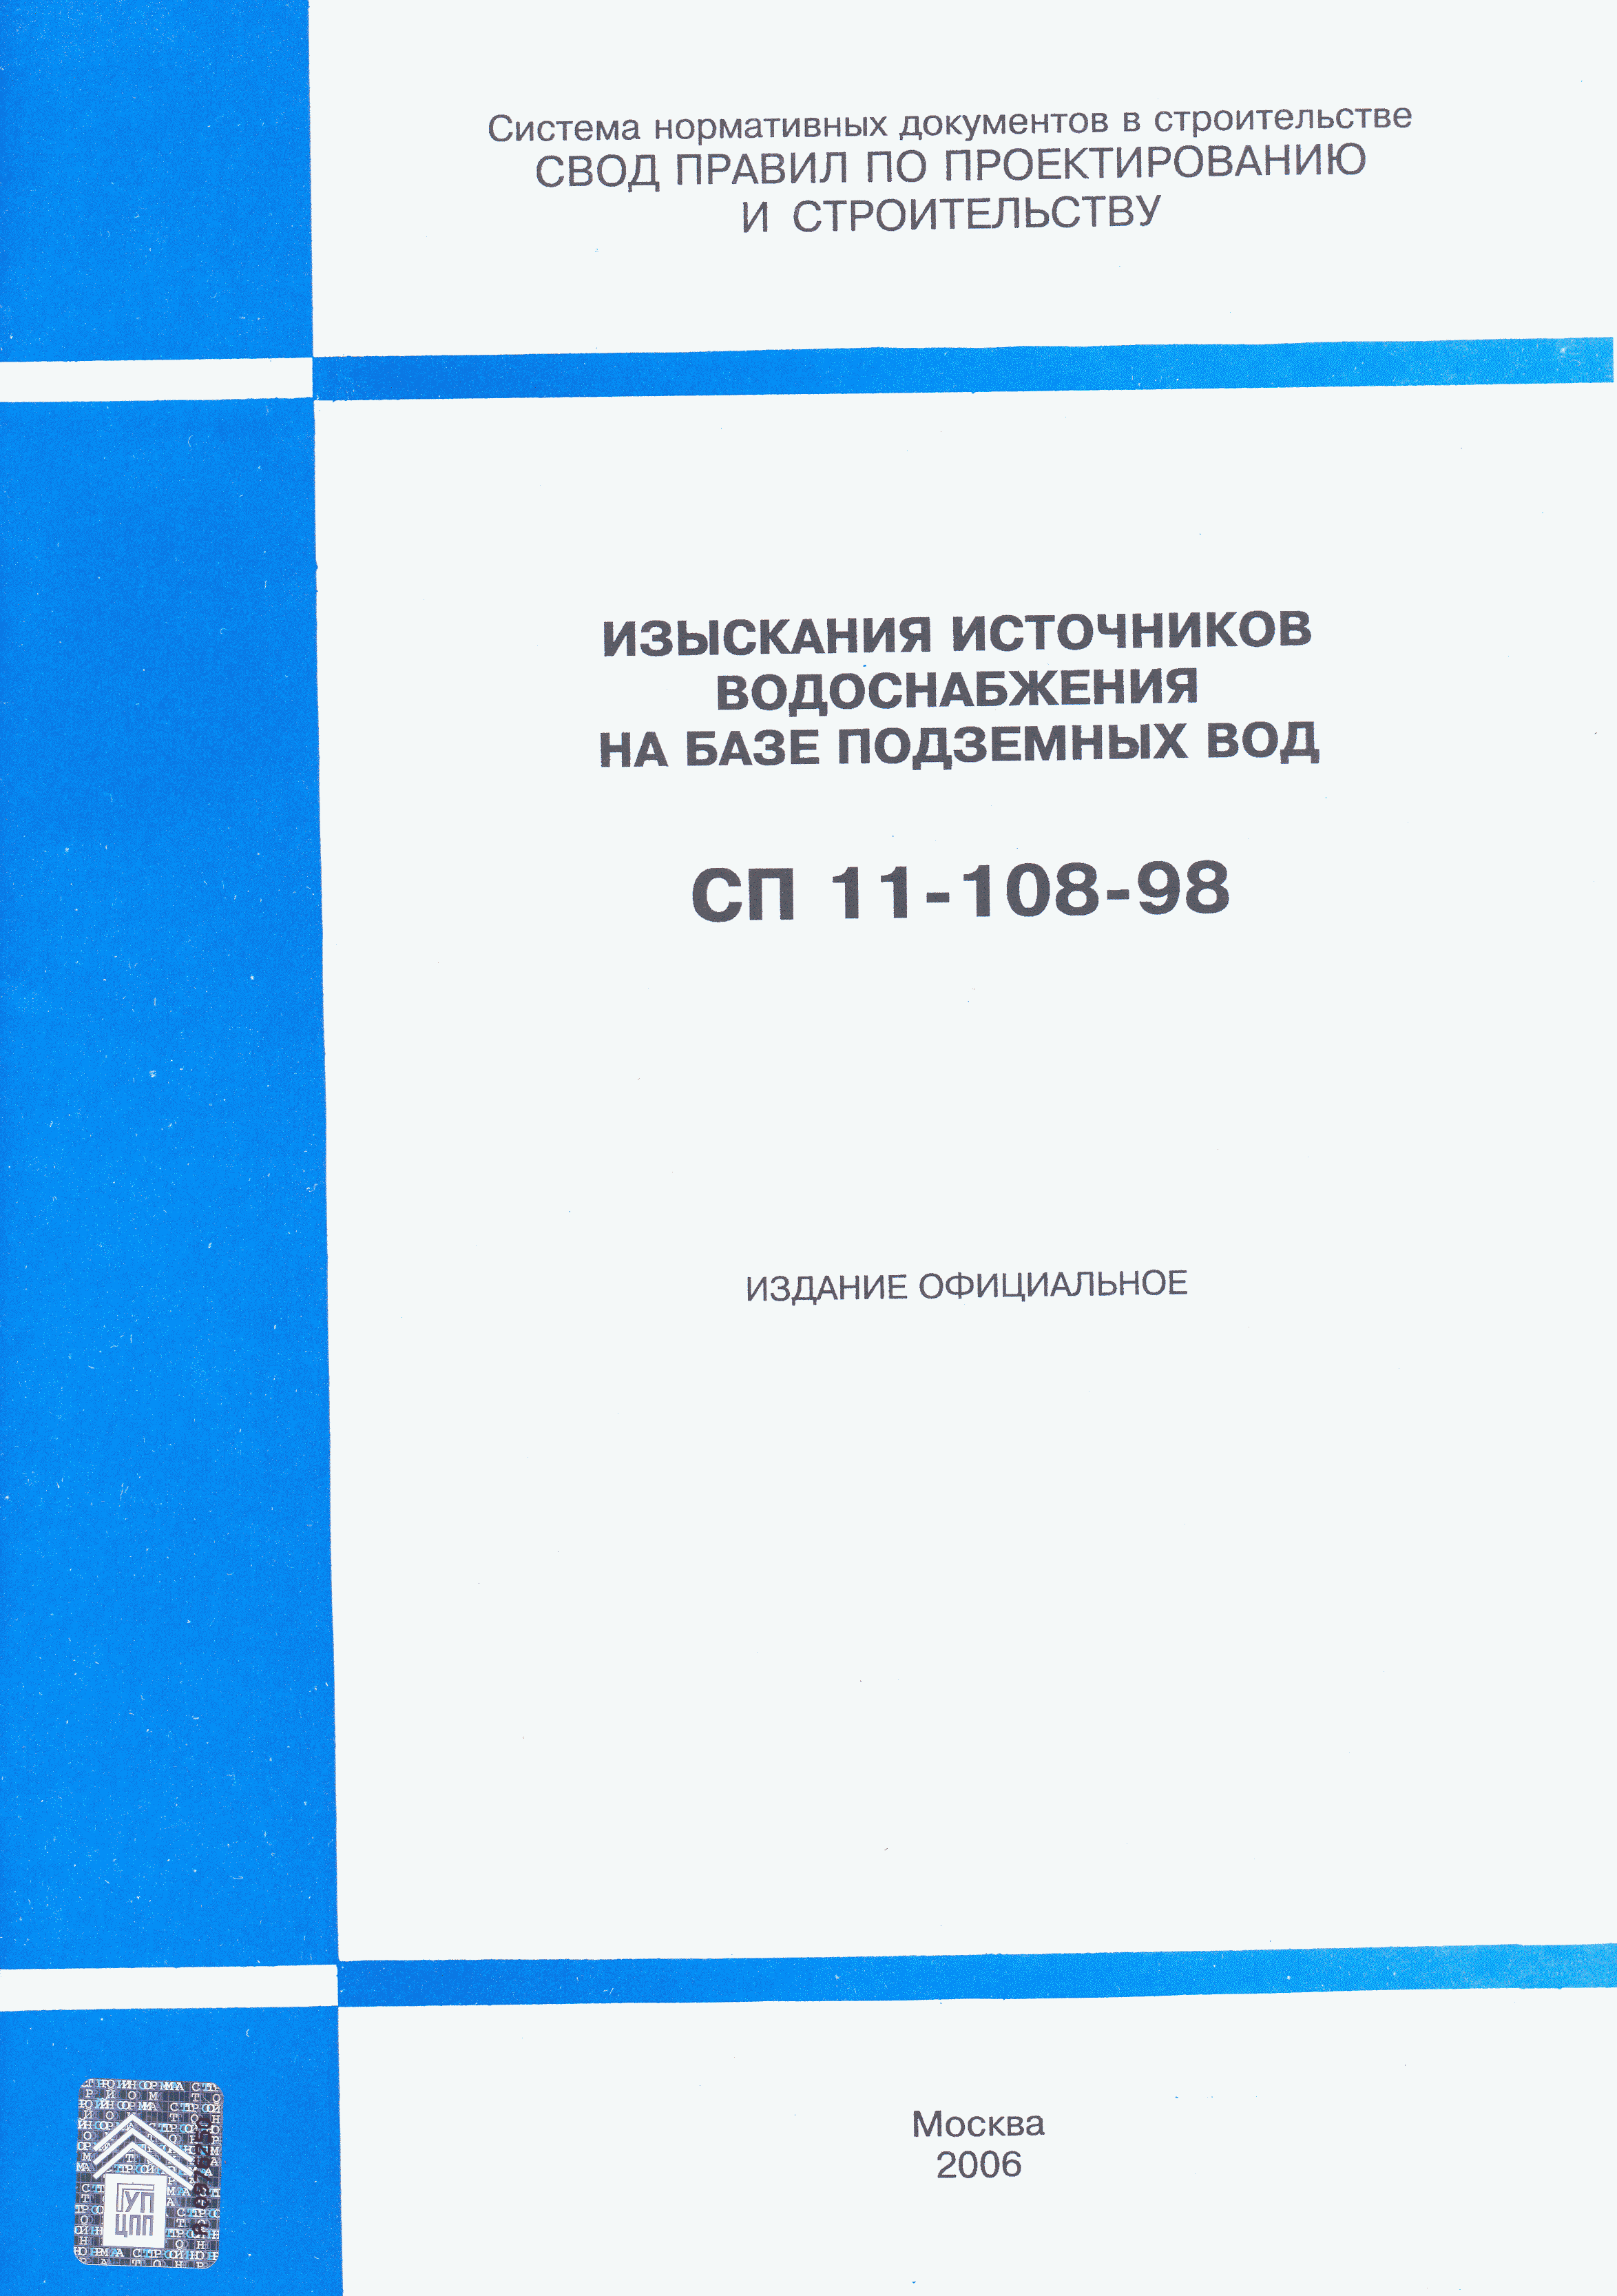 СП 11-108-98